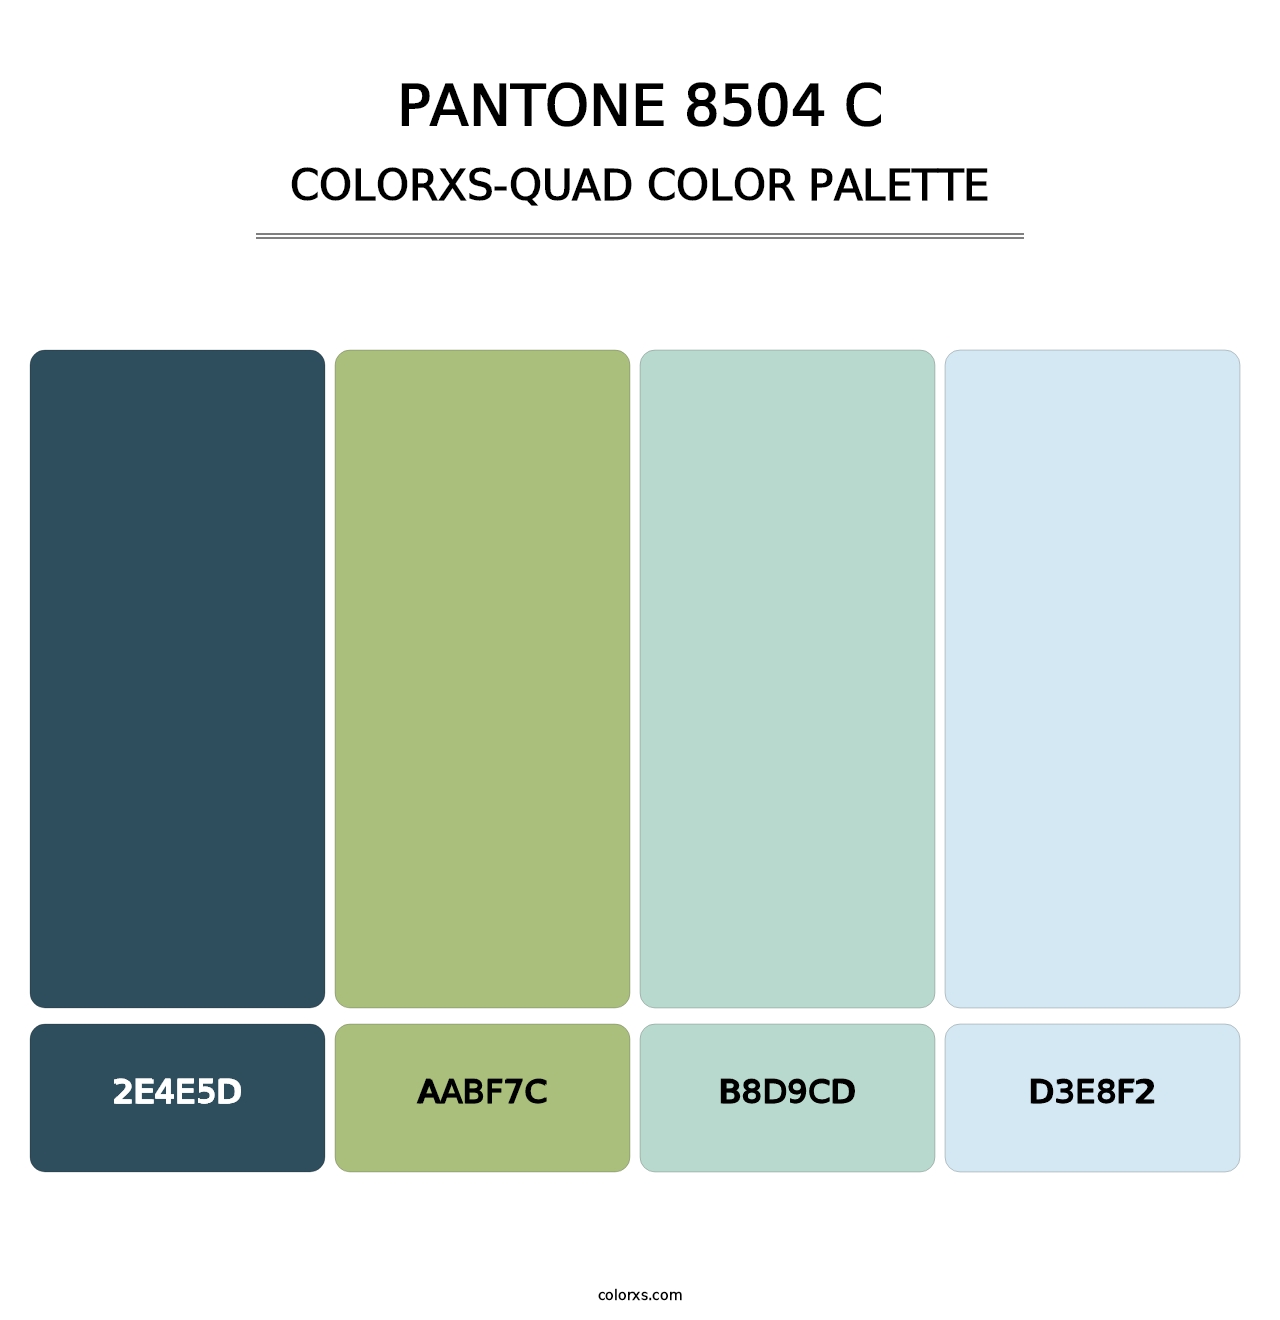 PANTONE 8504 C - Colorxs Quad Palette